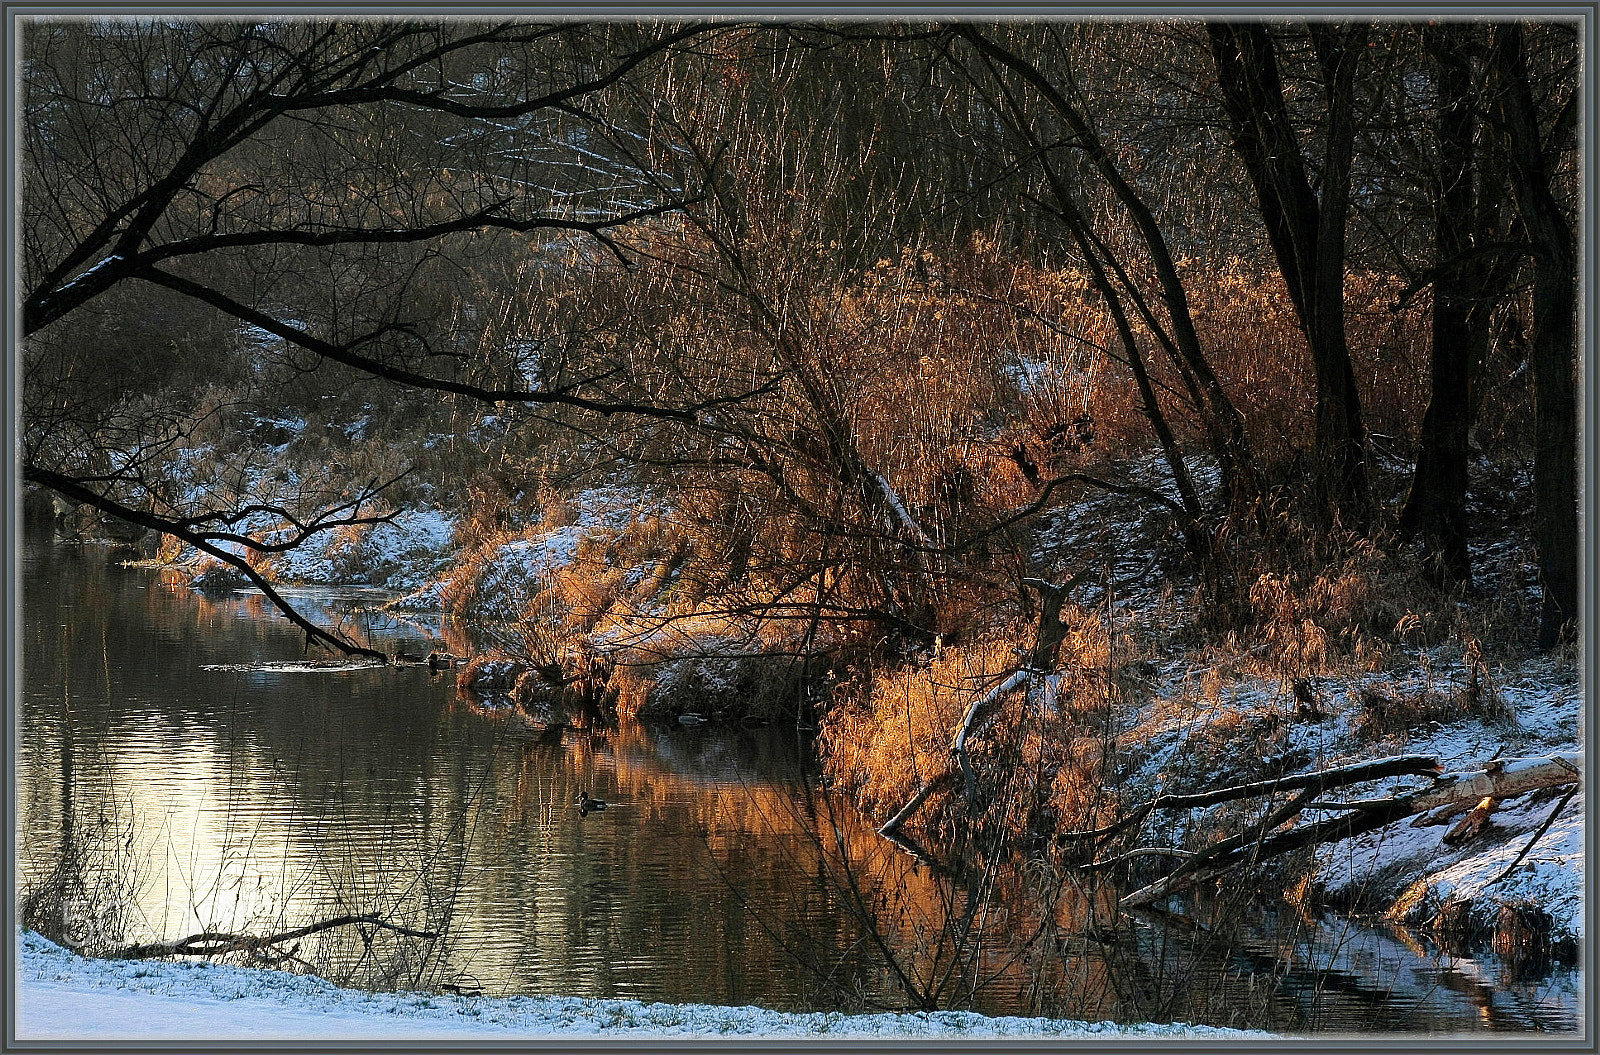 Canon EOS 40D sample photo. Winter photography